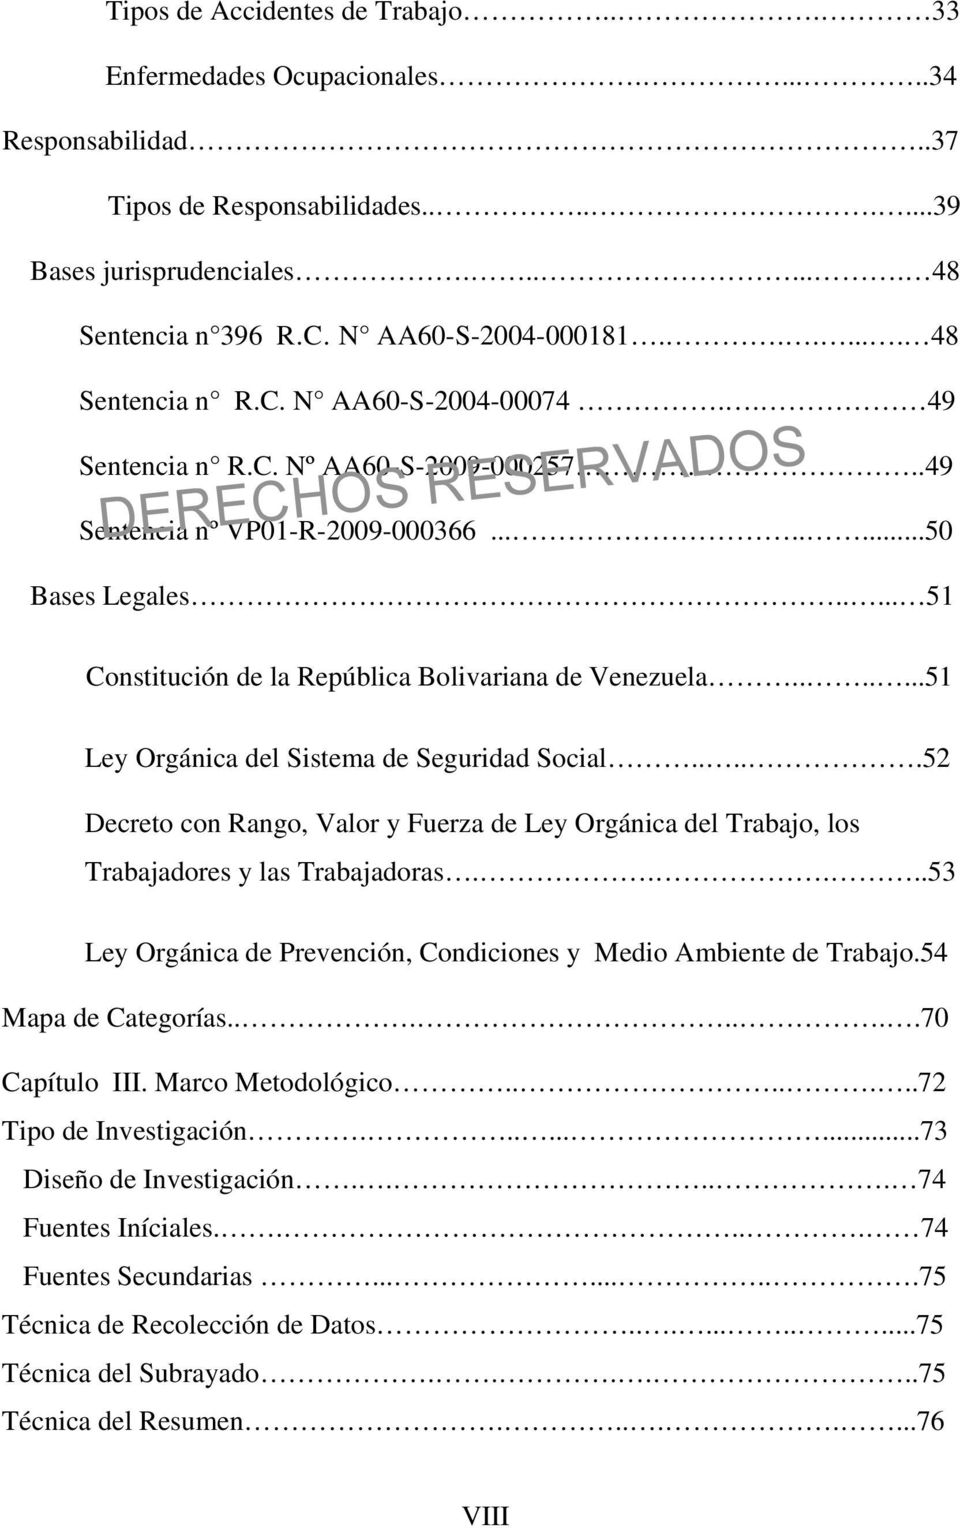 .... 51 Constitución de la República Bolivariana de Venezuela.......51 Ley Orgánica del Sistema de Seguridad Social.